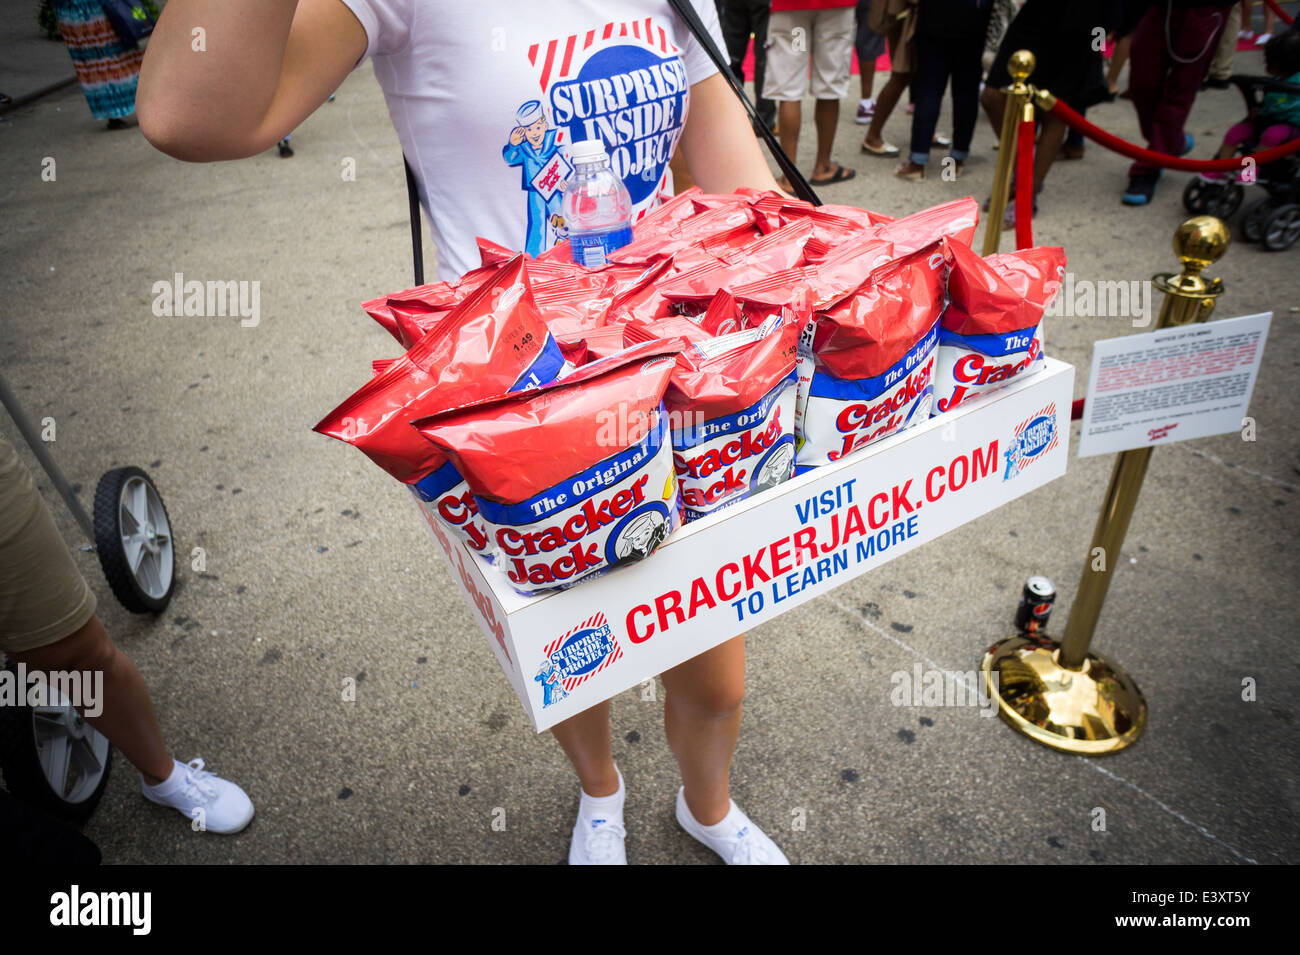 Eine Werbeveranstaltung für den legendären Cracker Jack-Snack mit dem Titel "The Überraschung im Inneren Project" wird von Menschenmassen in New York besucht. Stockfoto